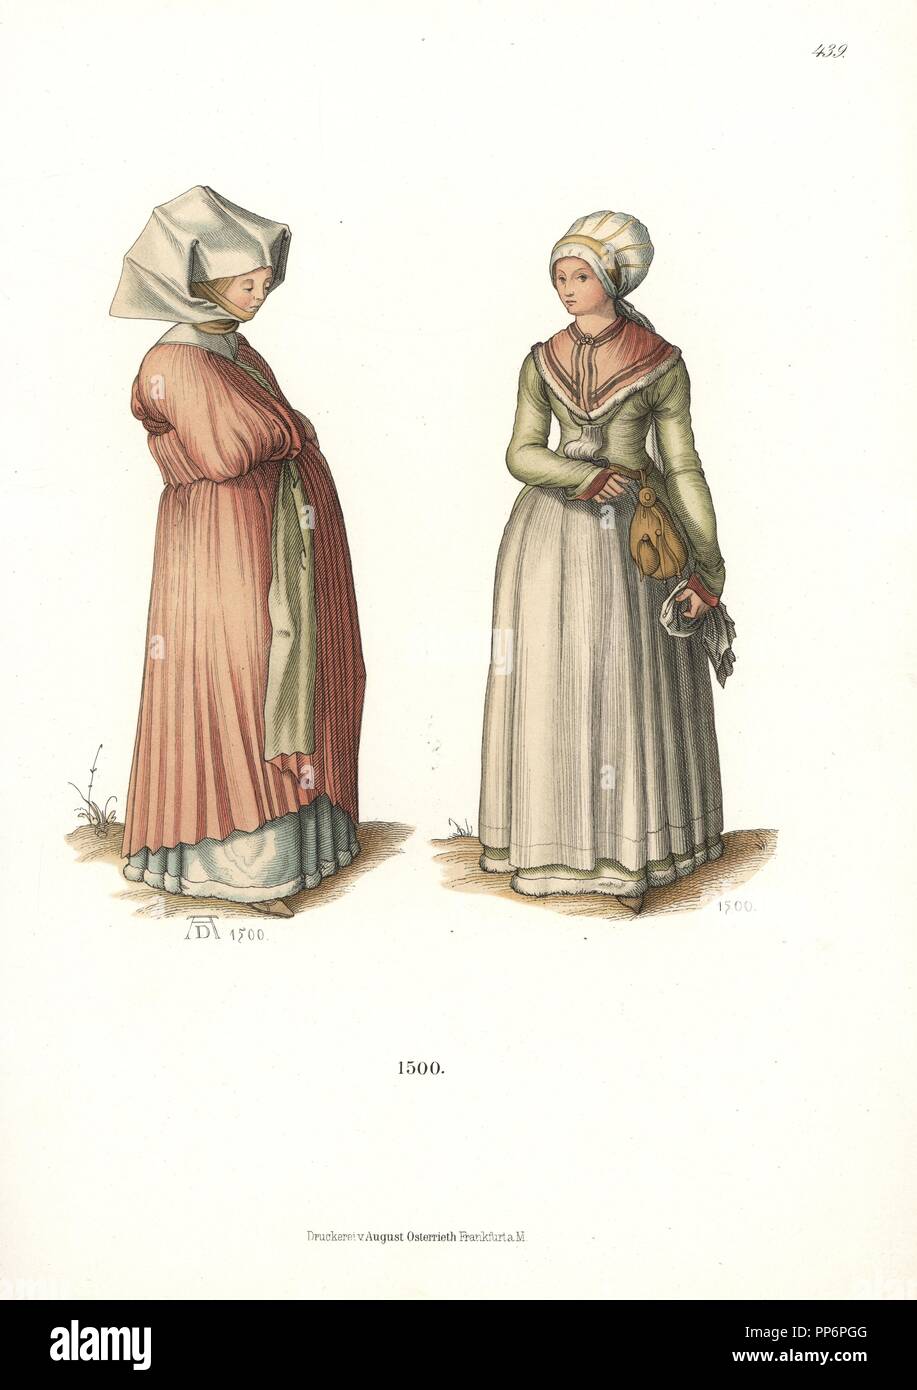 Mujer en ropa almidonada tocado conocido como Sturz, y una mujer en traje  nacional, 1500, a partir de un dibujo coloreado por Albrecht Durer en la  colección Albertina de Viena. Desde Hefner-Alteneck